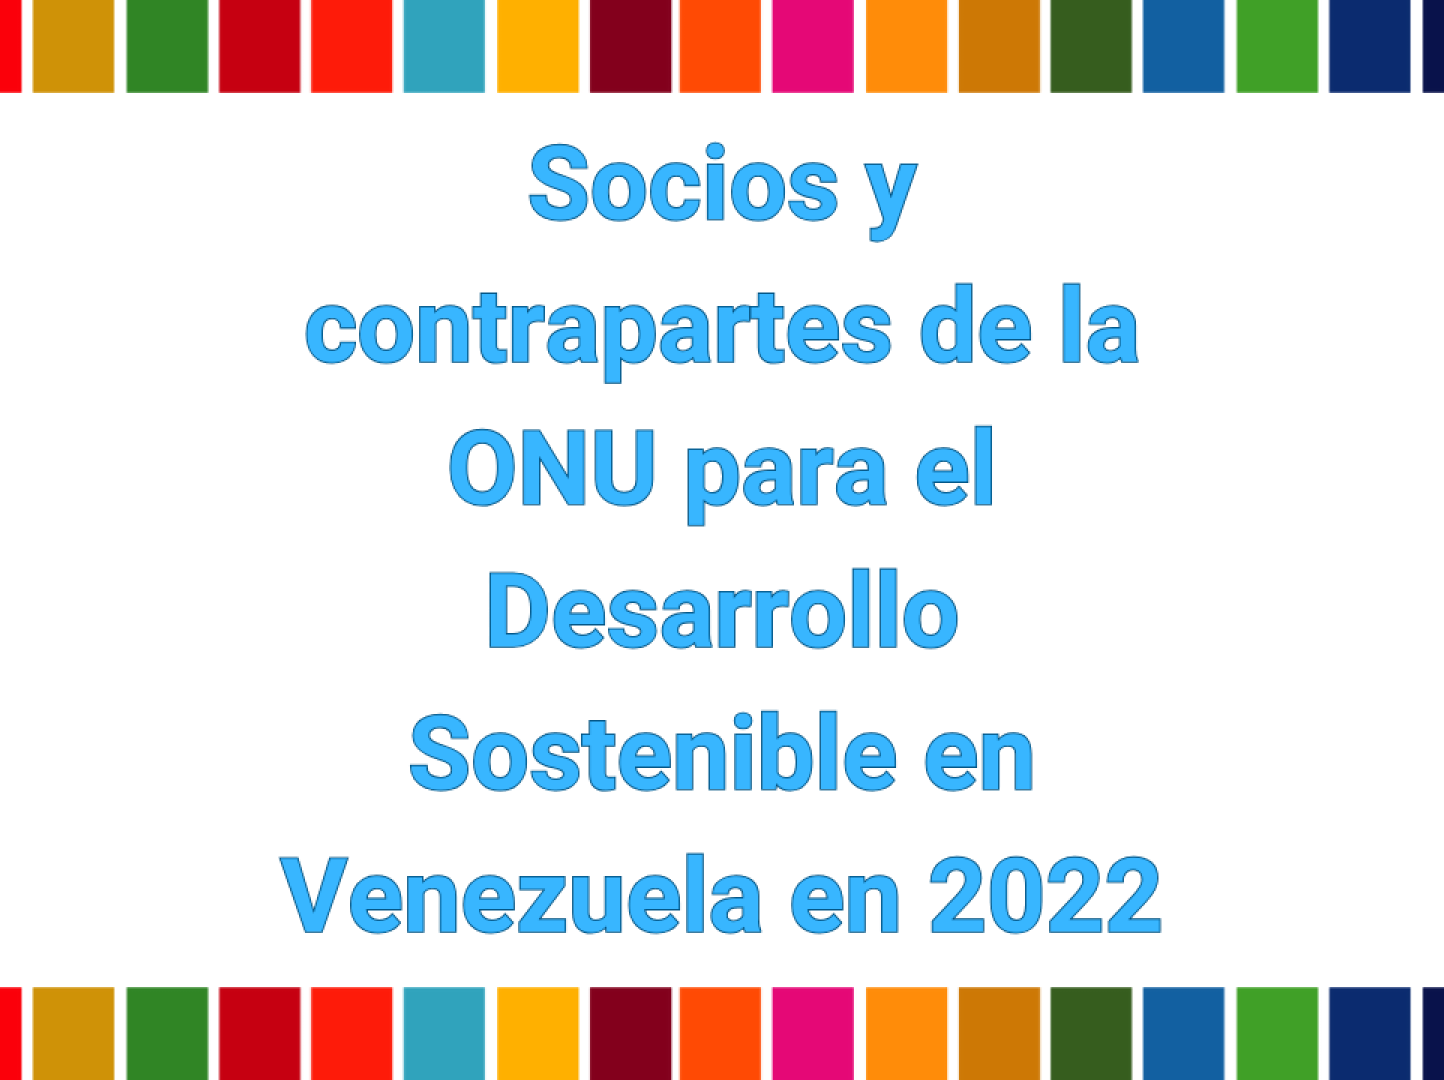 Conoce a los socios y contrapartes de la ONU para el Desarrollo Sostenible en Venezuela 2022.